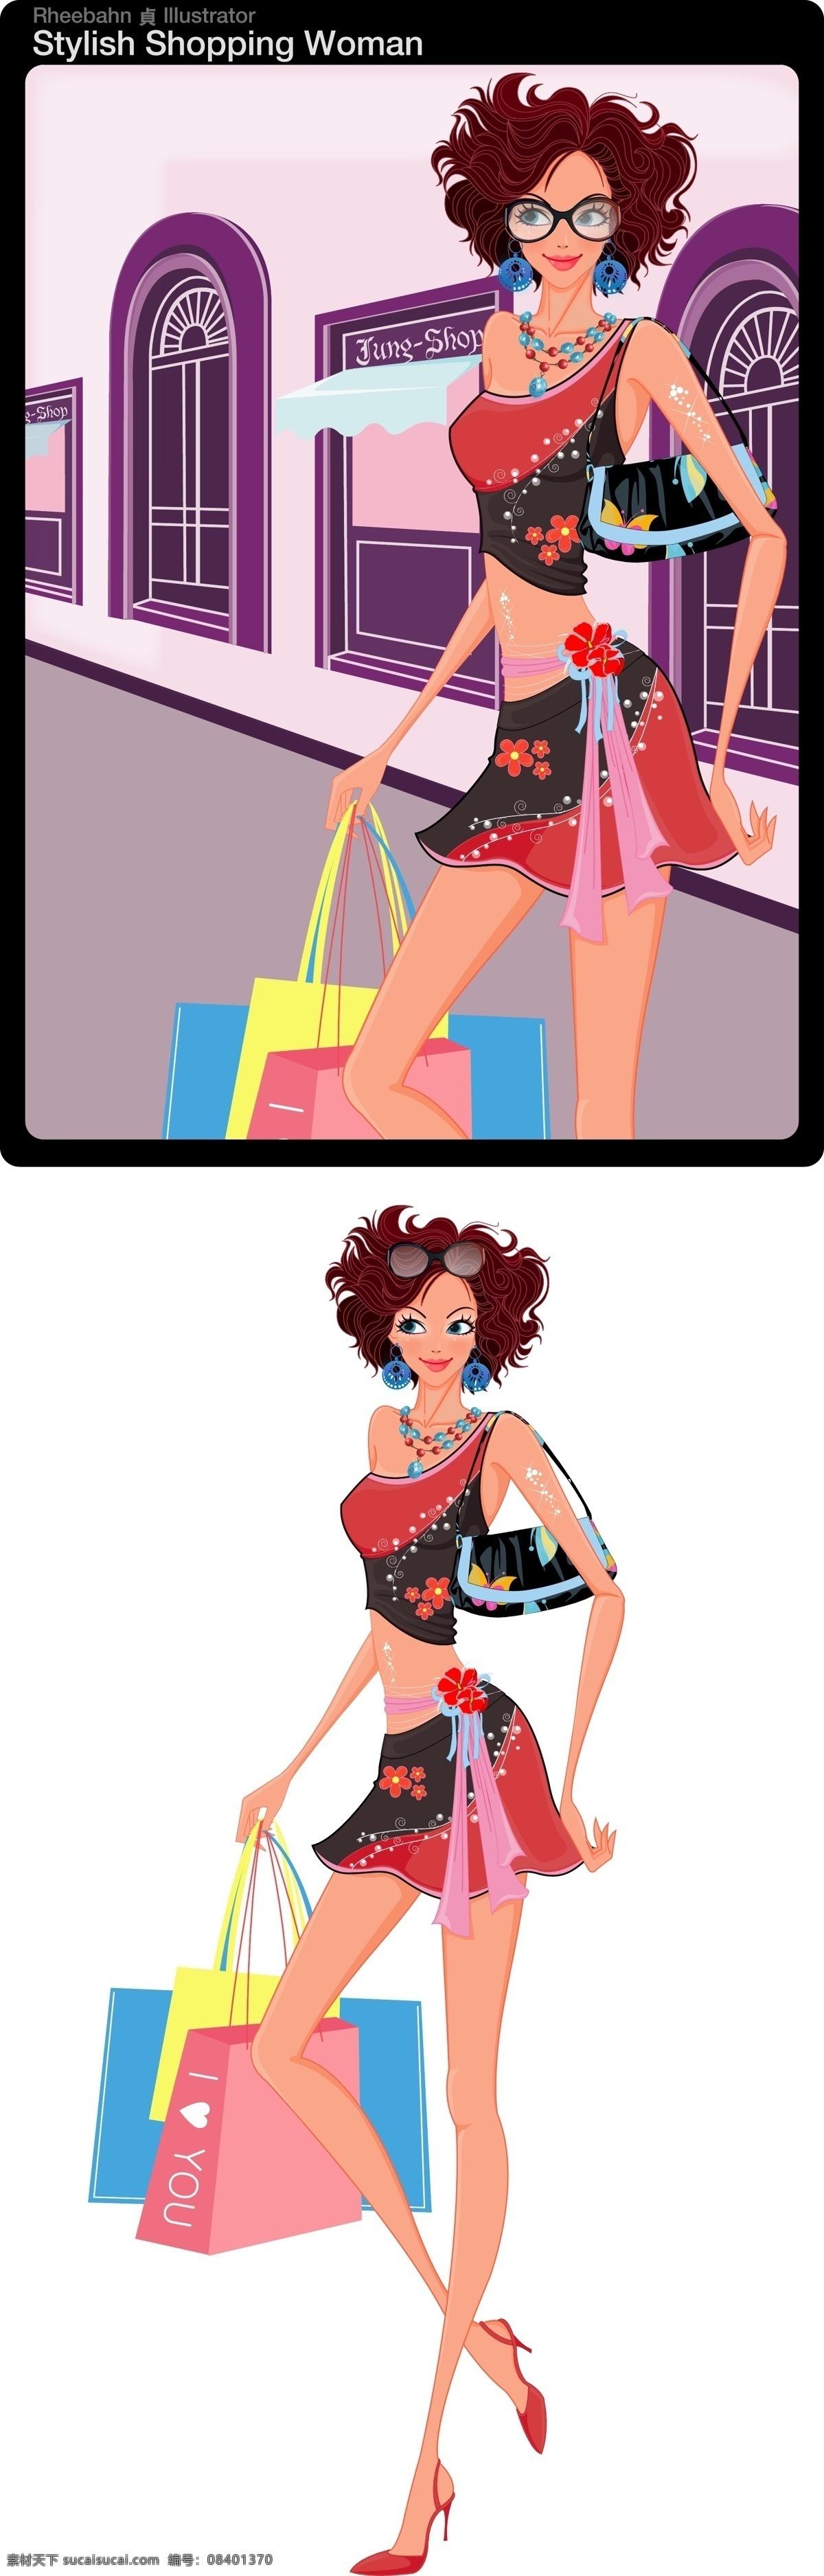 时尚购物女人 时尚 购物 精致包包 购物带 矢量人物 妇女女性 女女 矢量图库